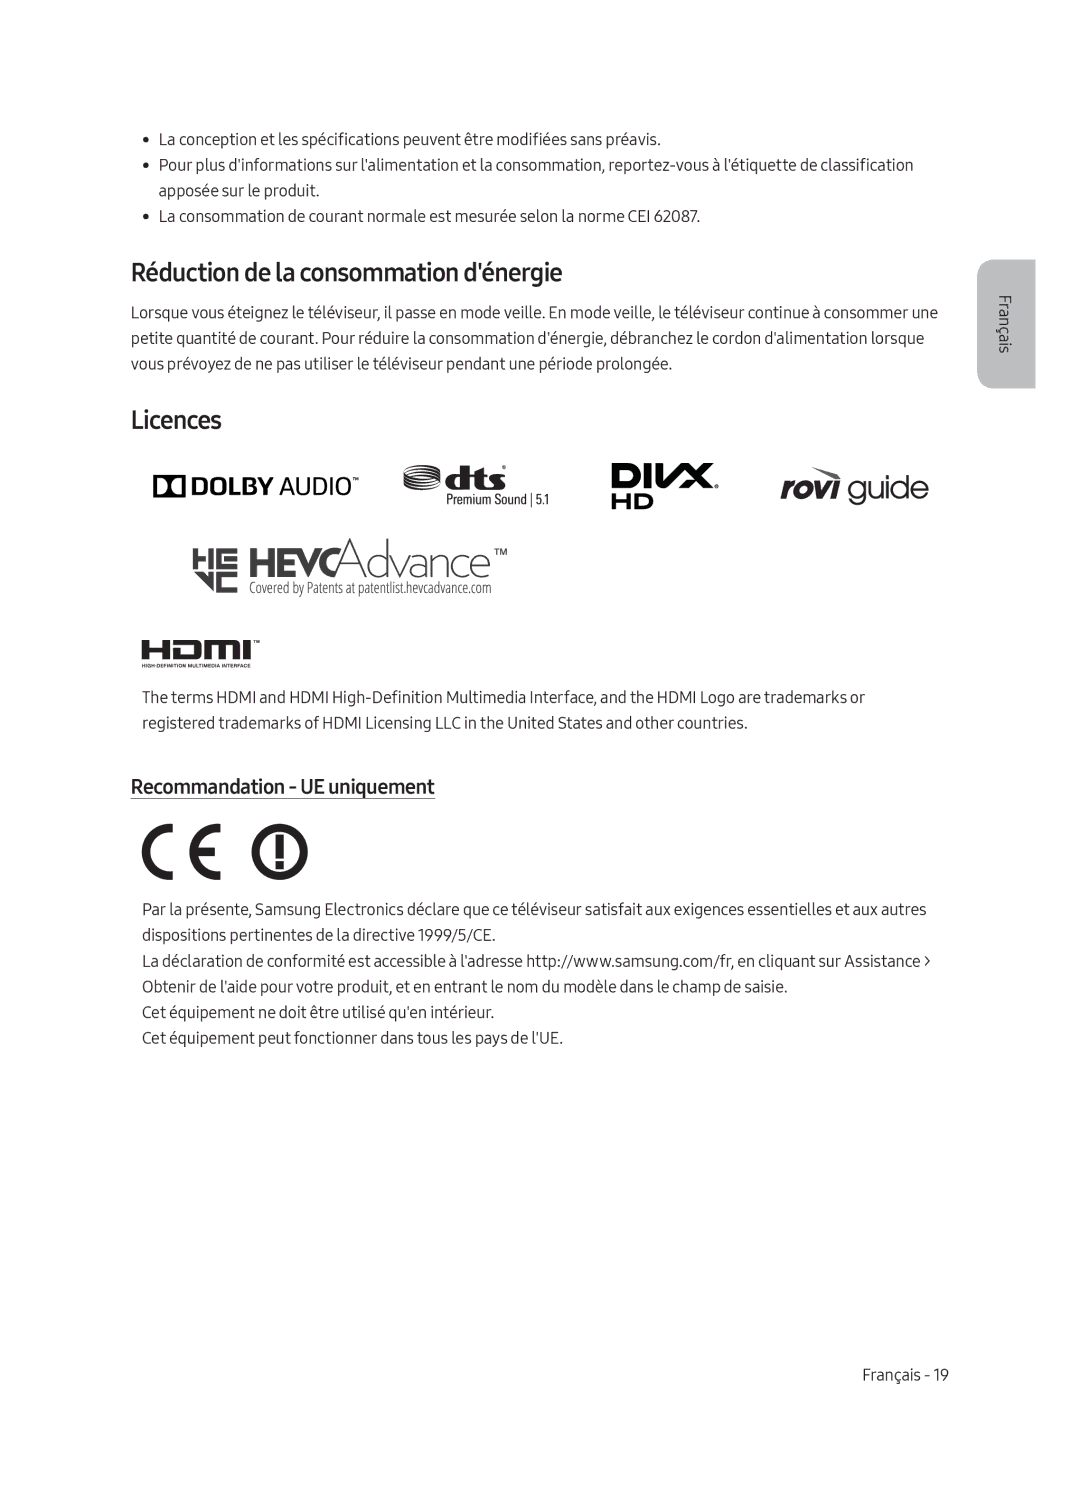 Samsung UE55MU6220WXXN manual Réduction de la consommation dénergie, Recommandation UE uniquement 